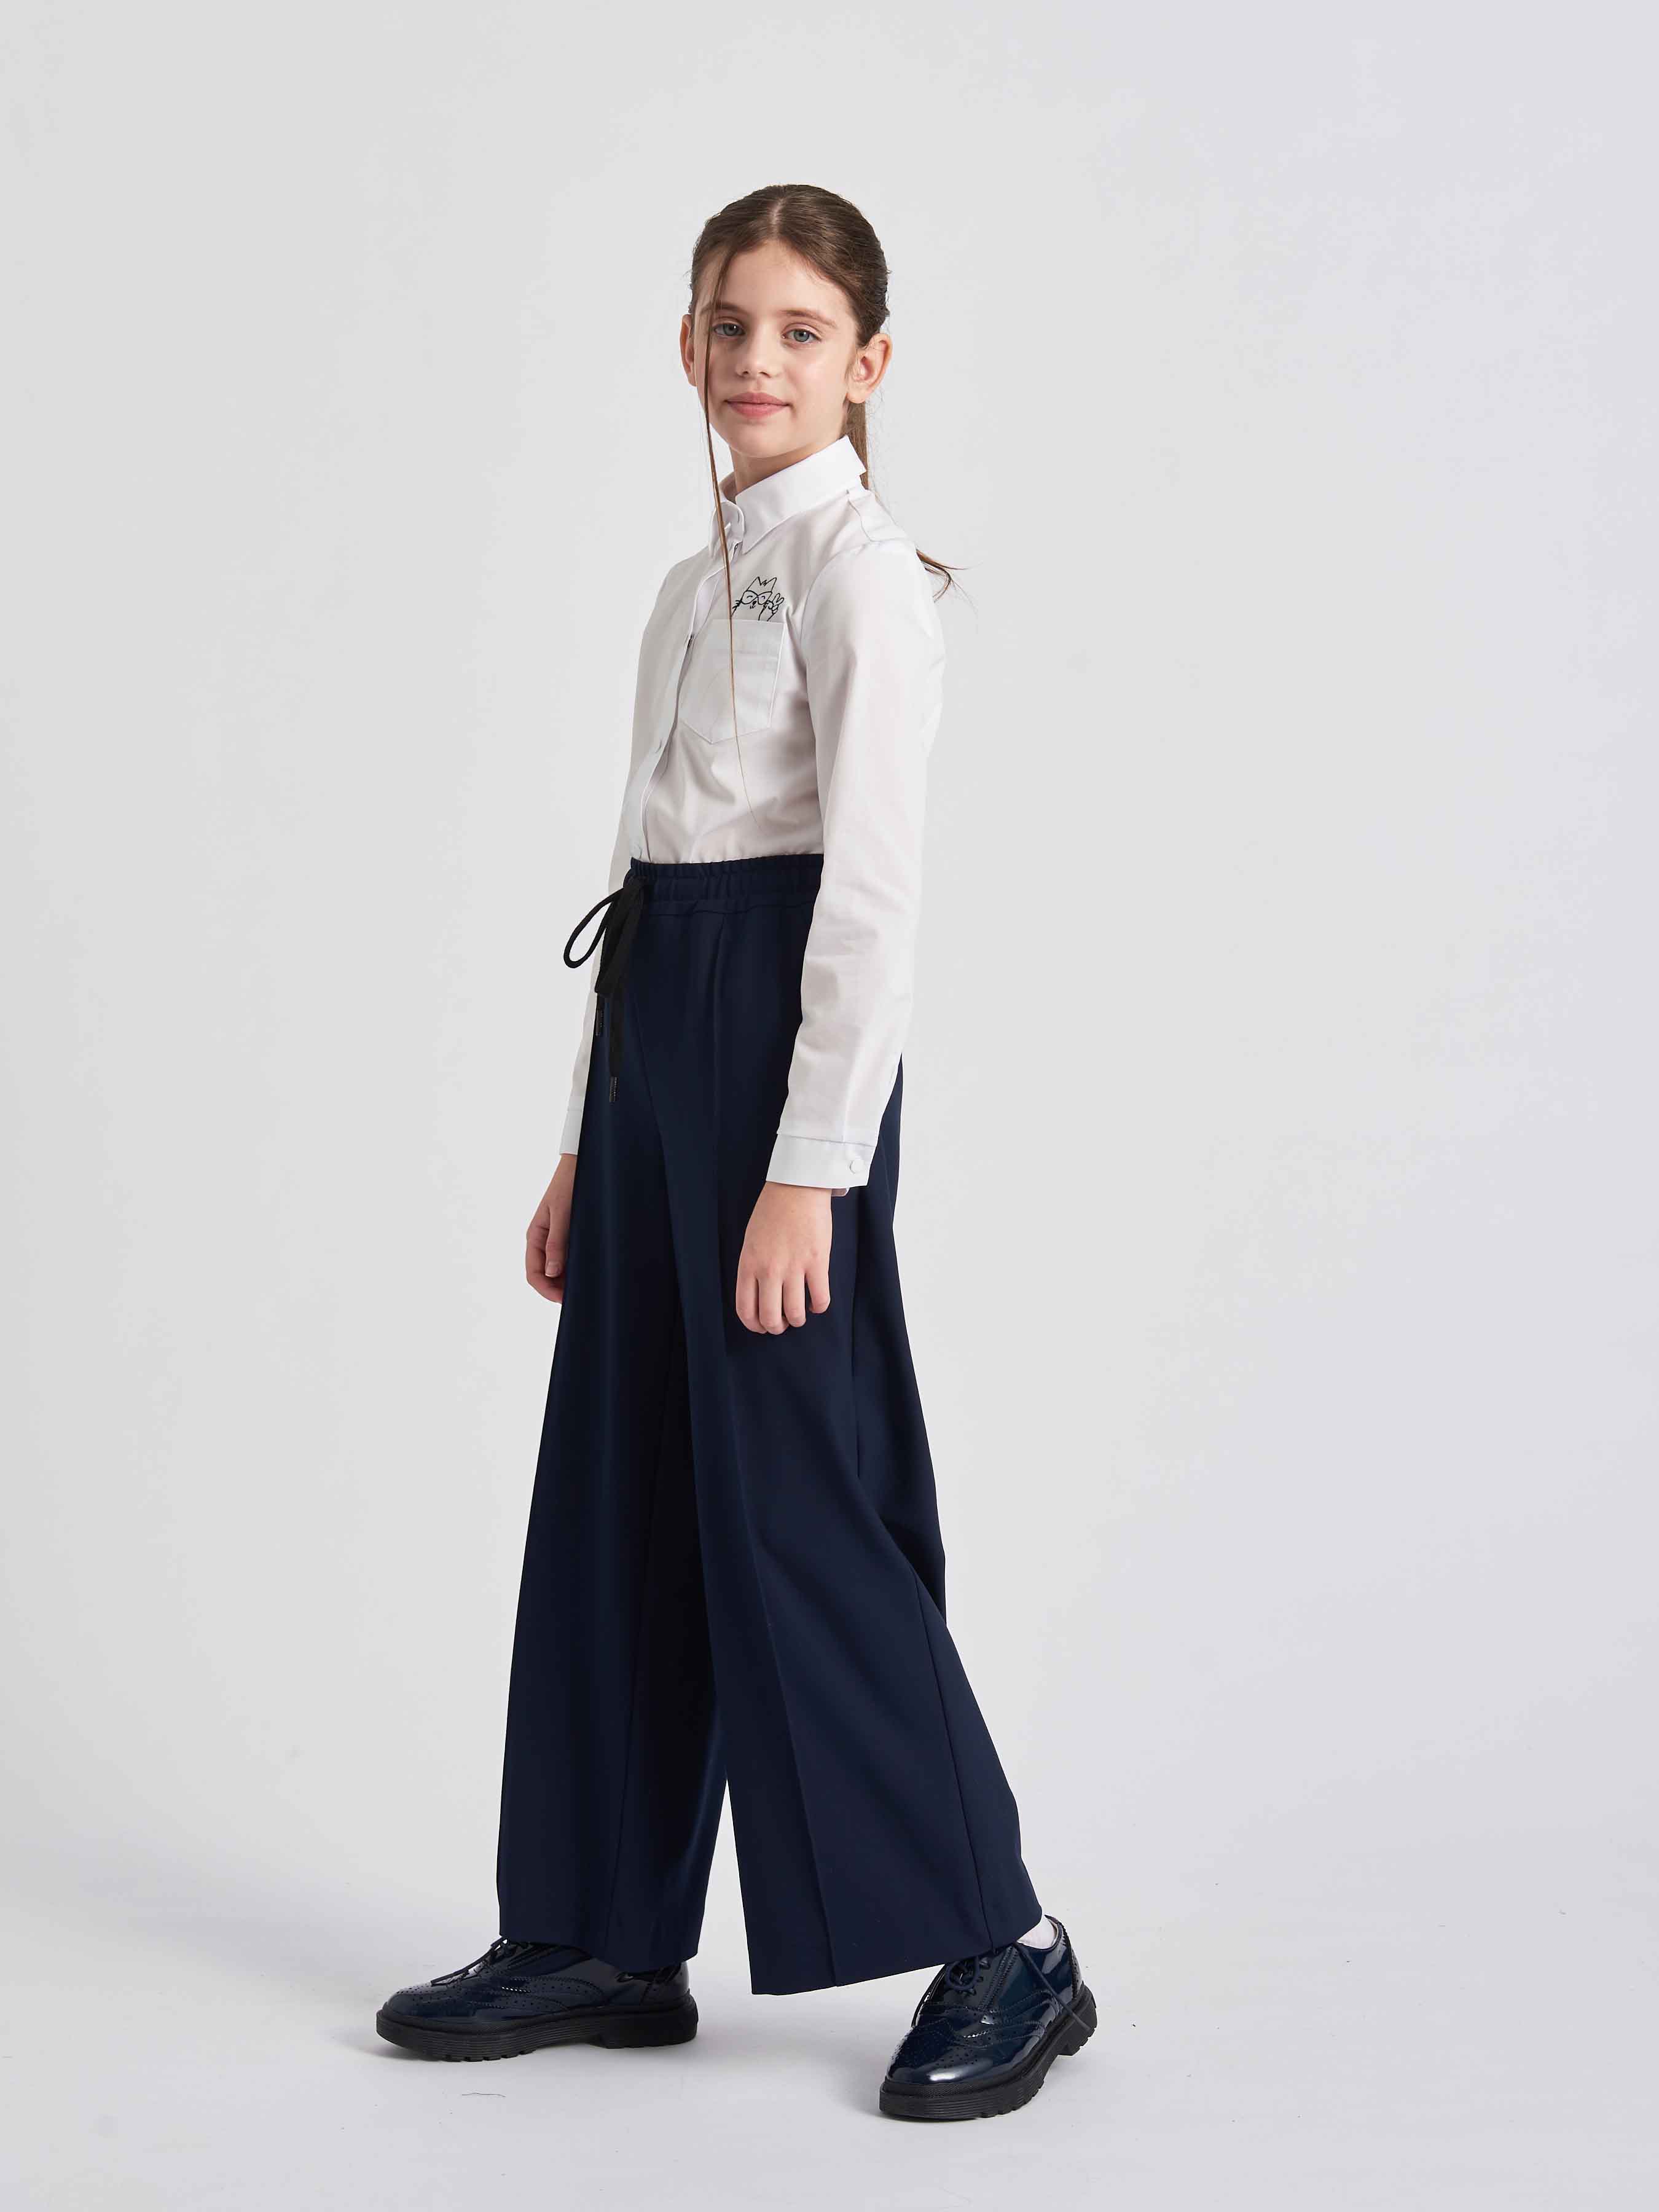 Школьные брюки для девочки синие палаццо 12691 купить от 1 890 ₽ руб.Школьная Форма для Девочек